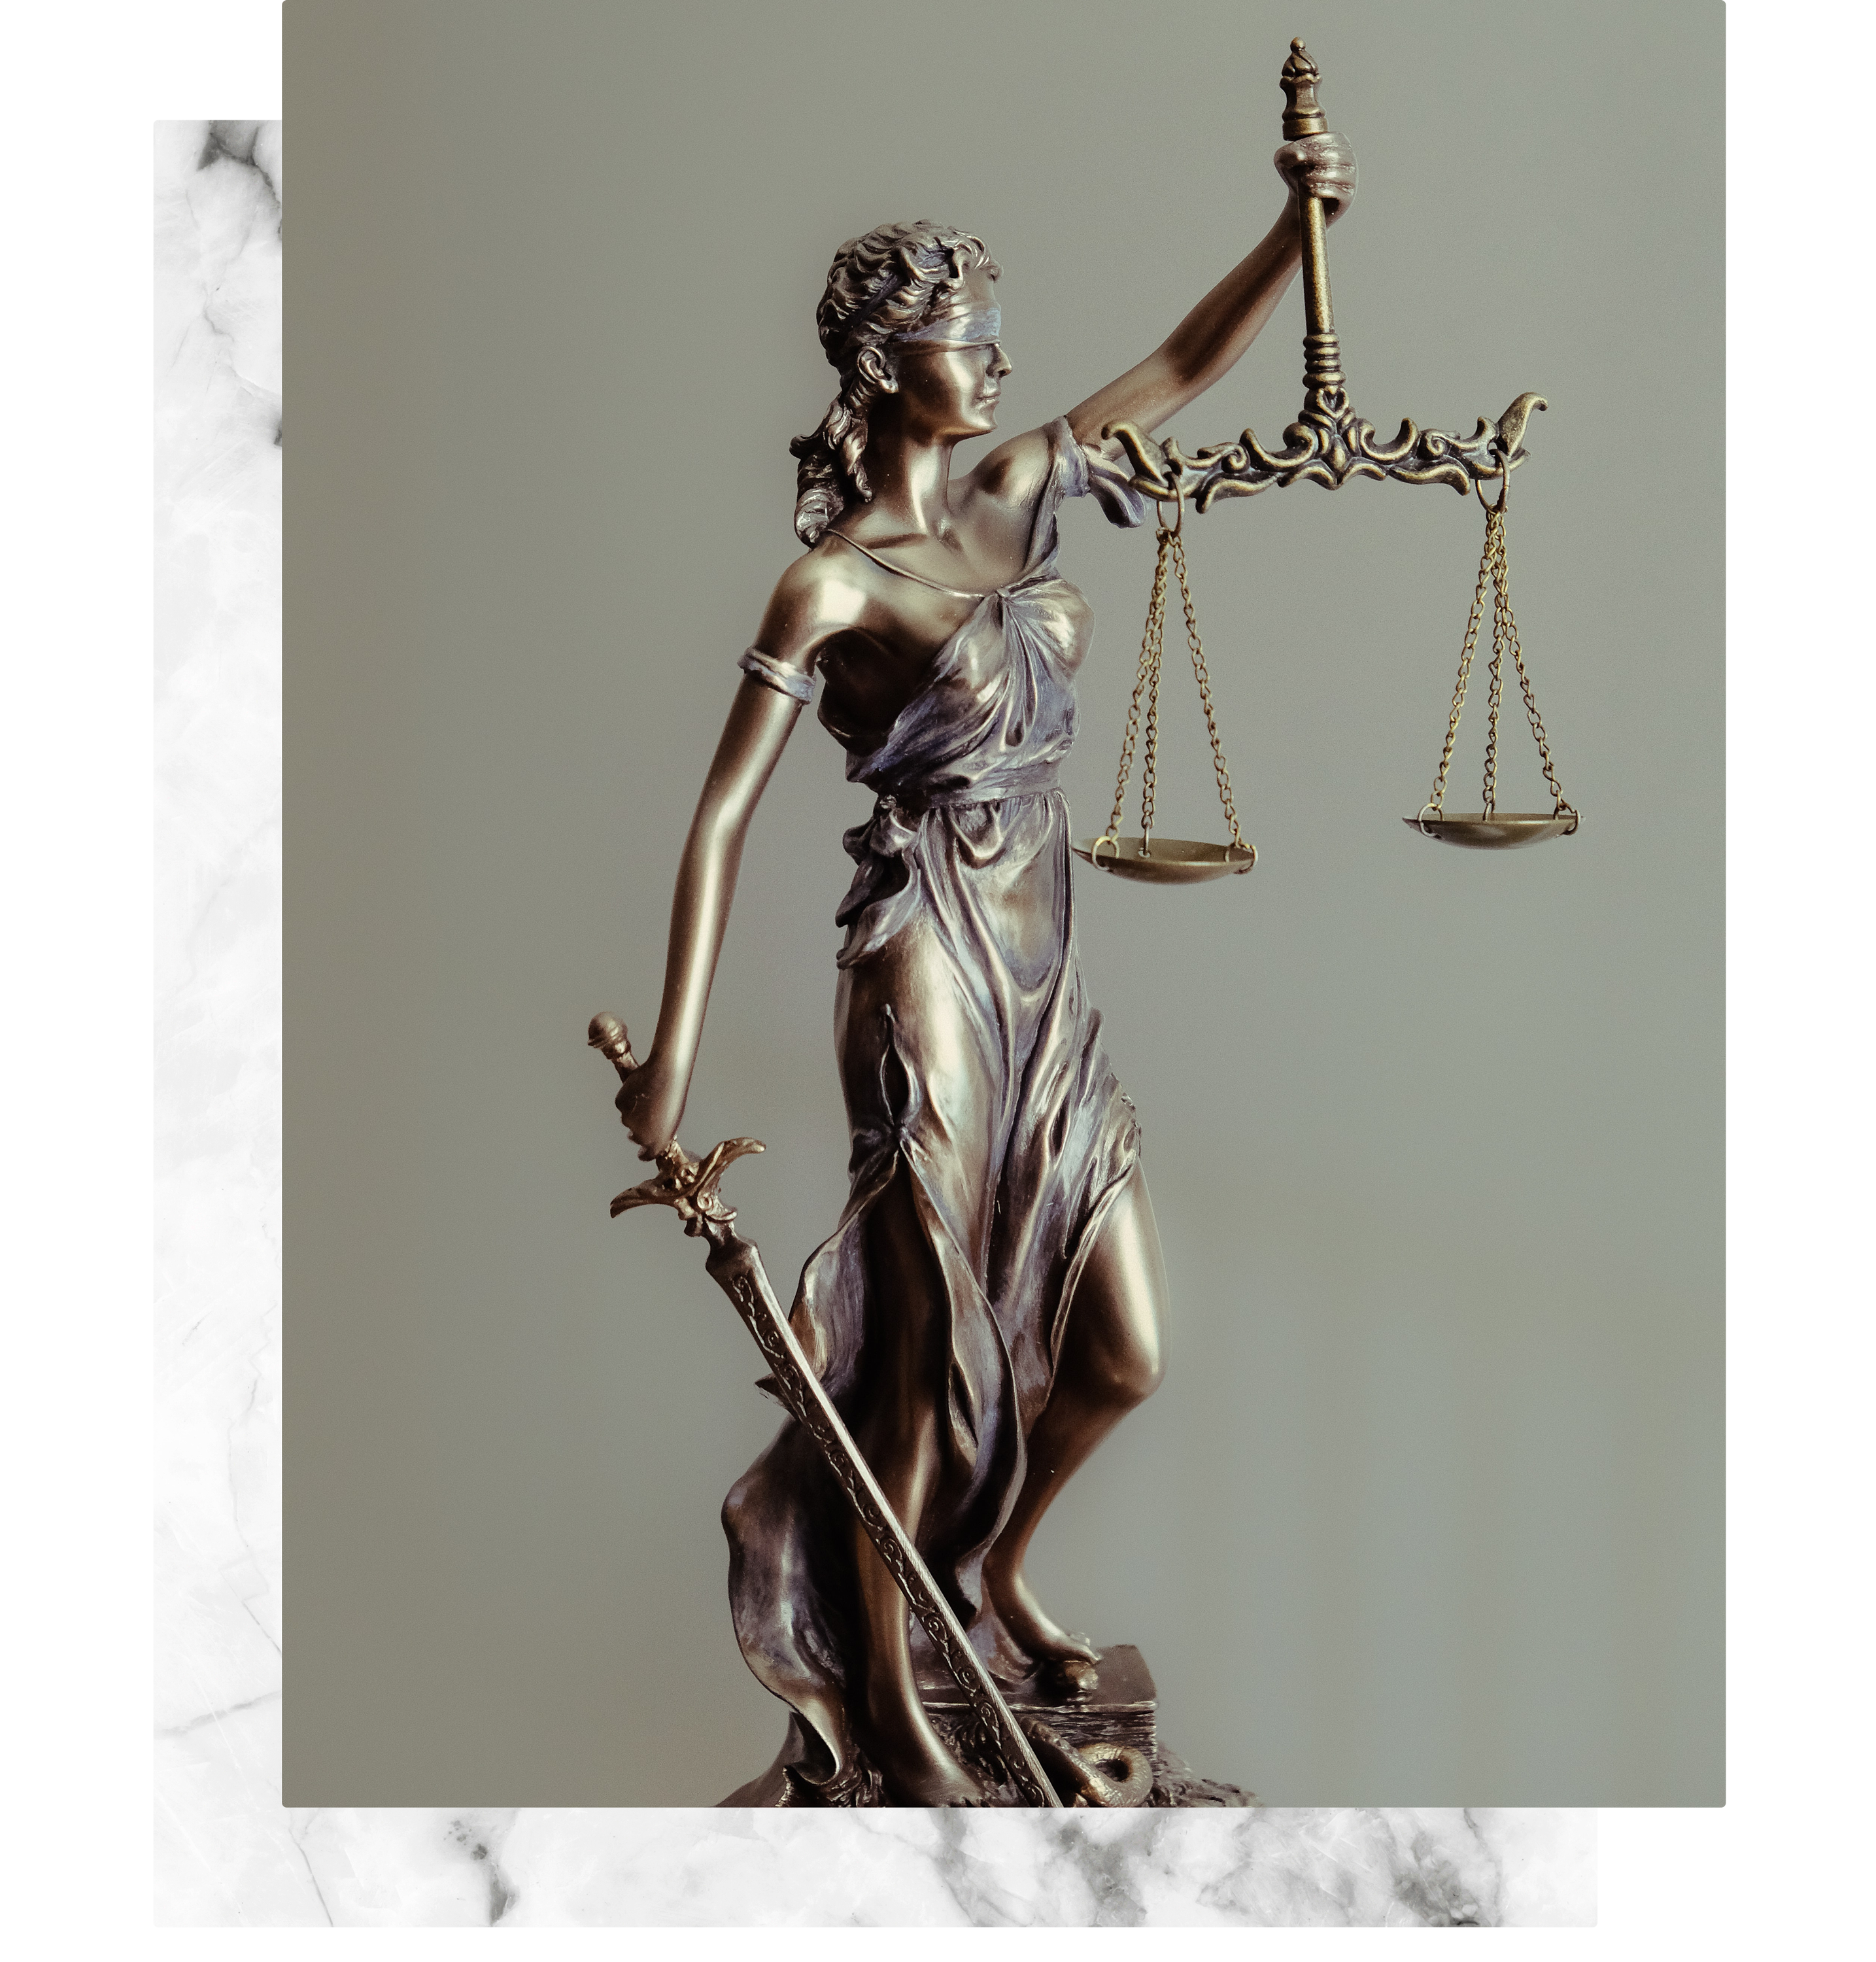 https://harmio-avocats.fr/wp-content/uploads/2021/06/competences-harmio-avocats-montpellier.png